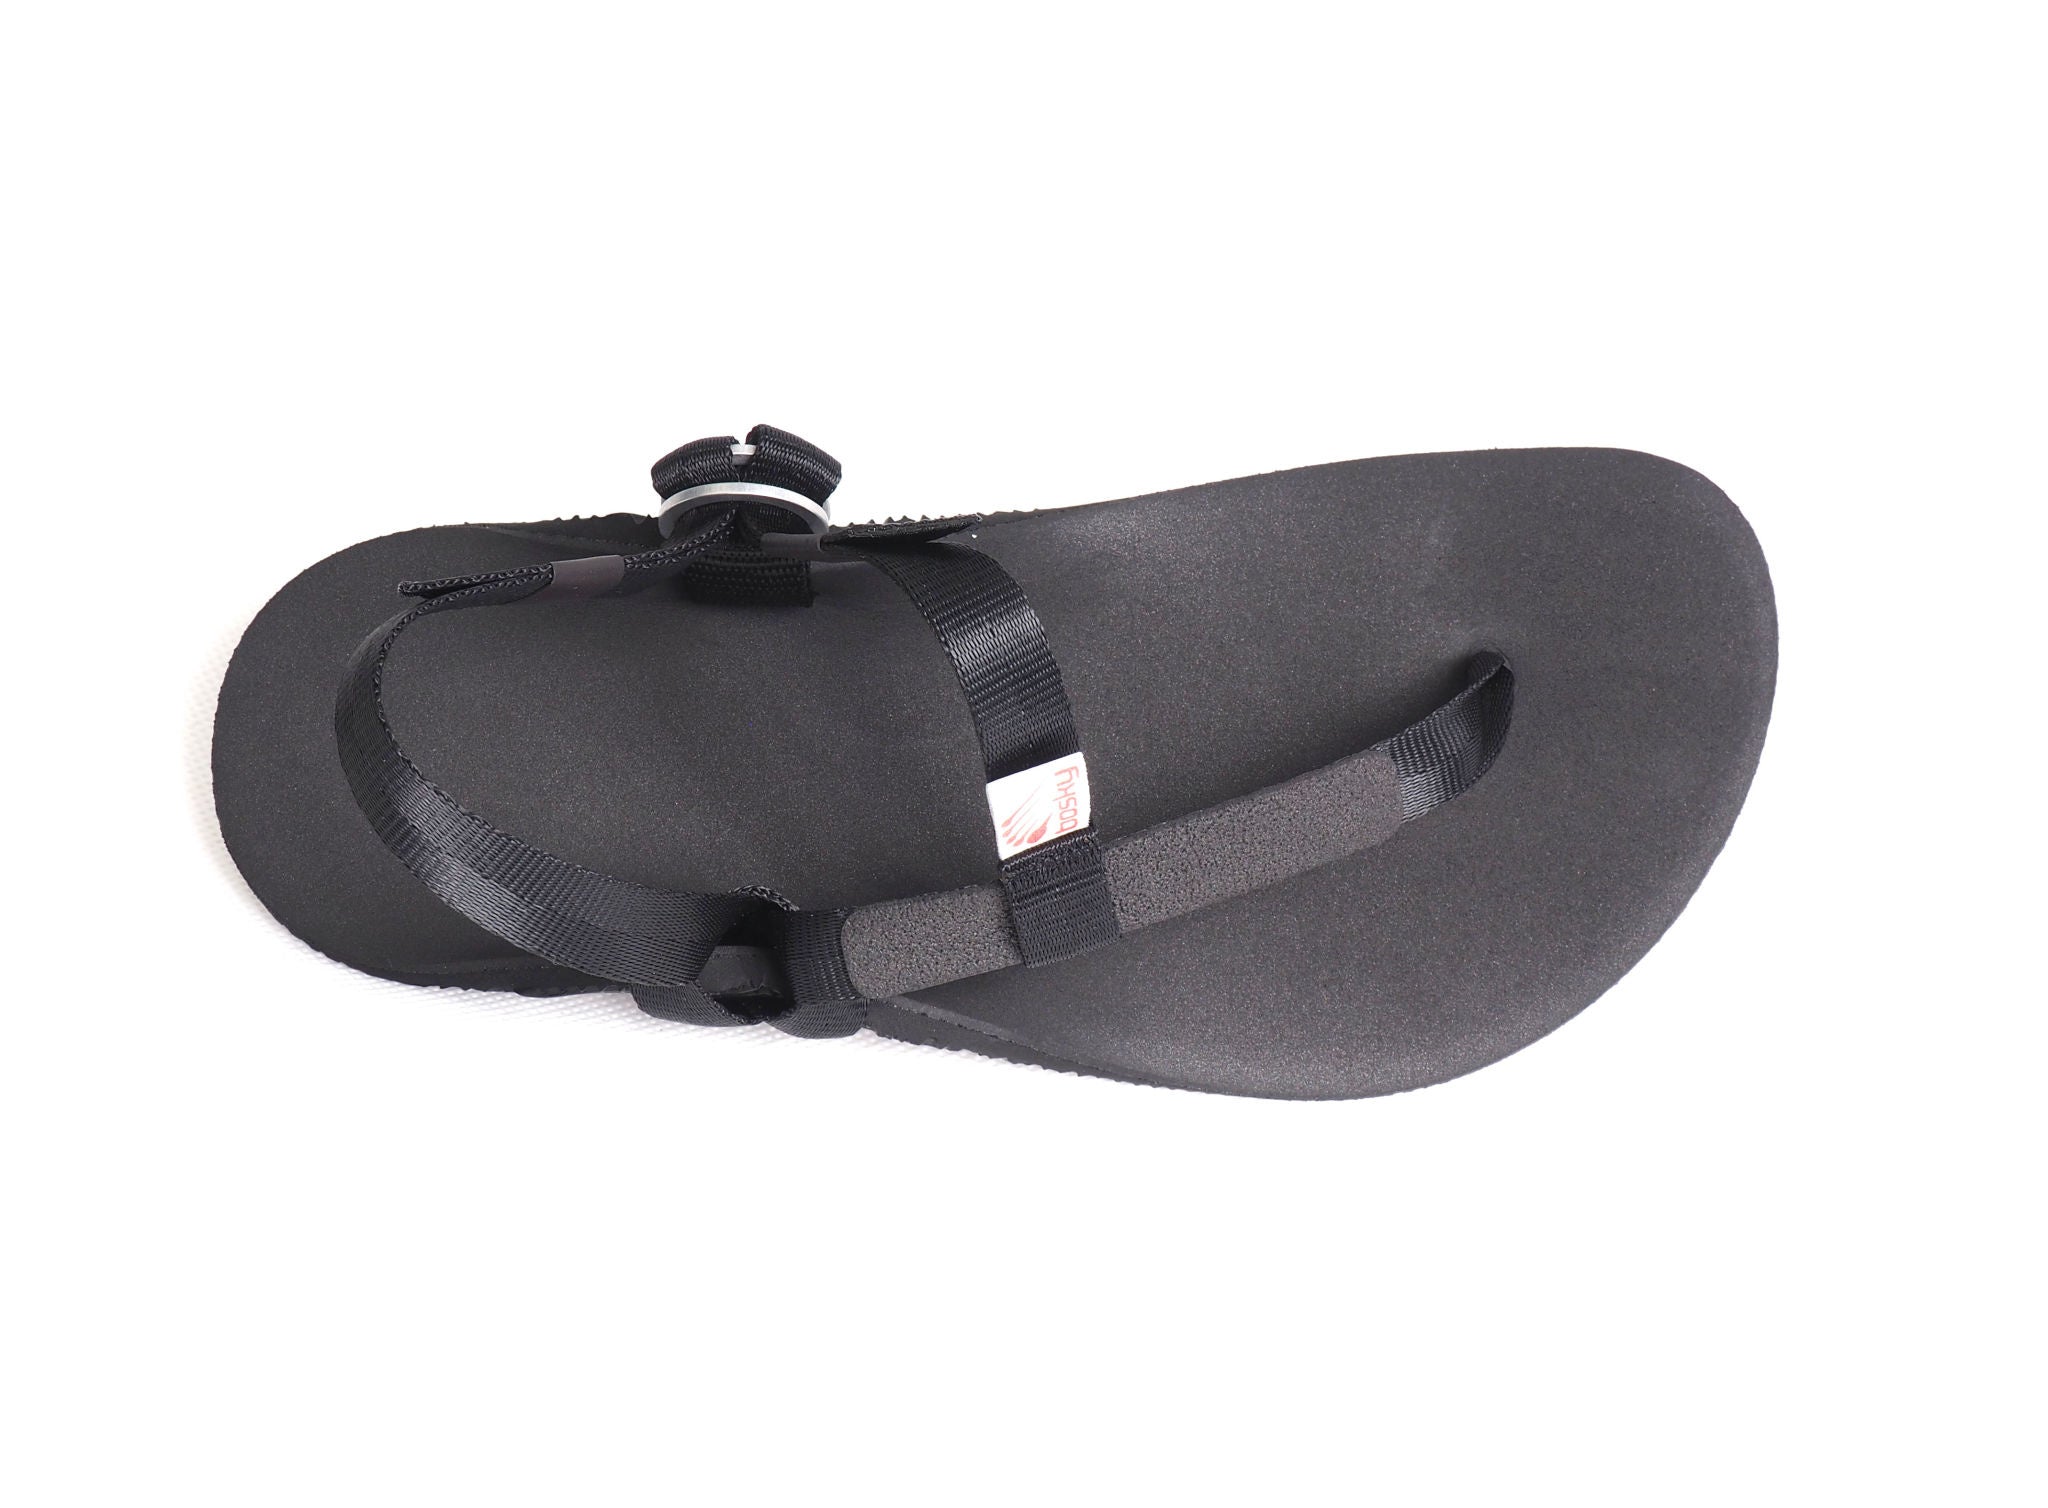 Bosky Superlight barfods sandaler til kvinder og mænd i farven black, top